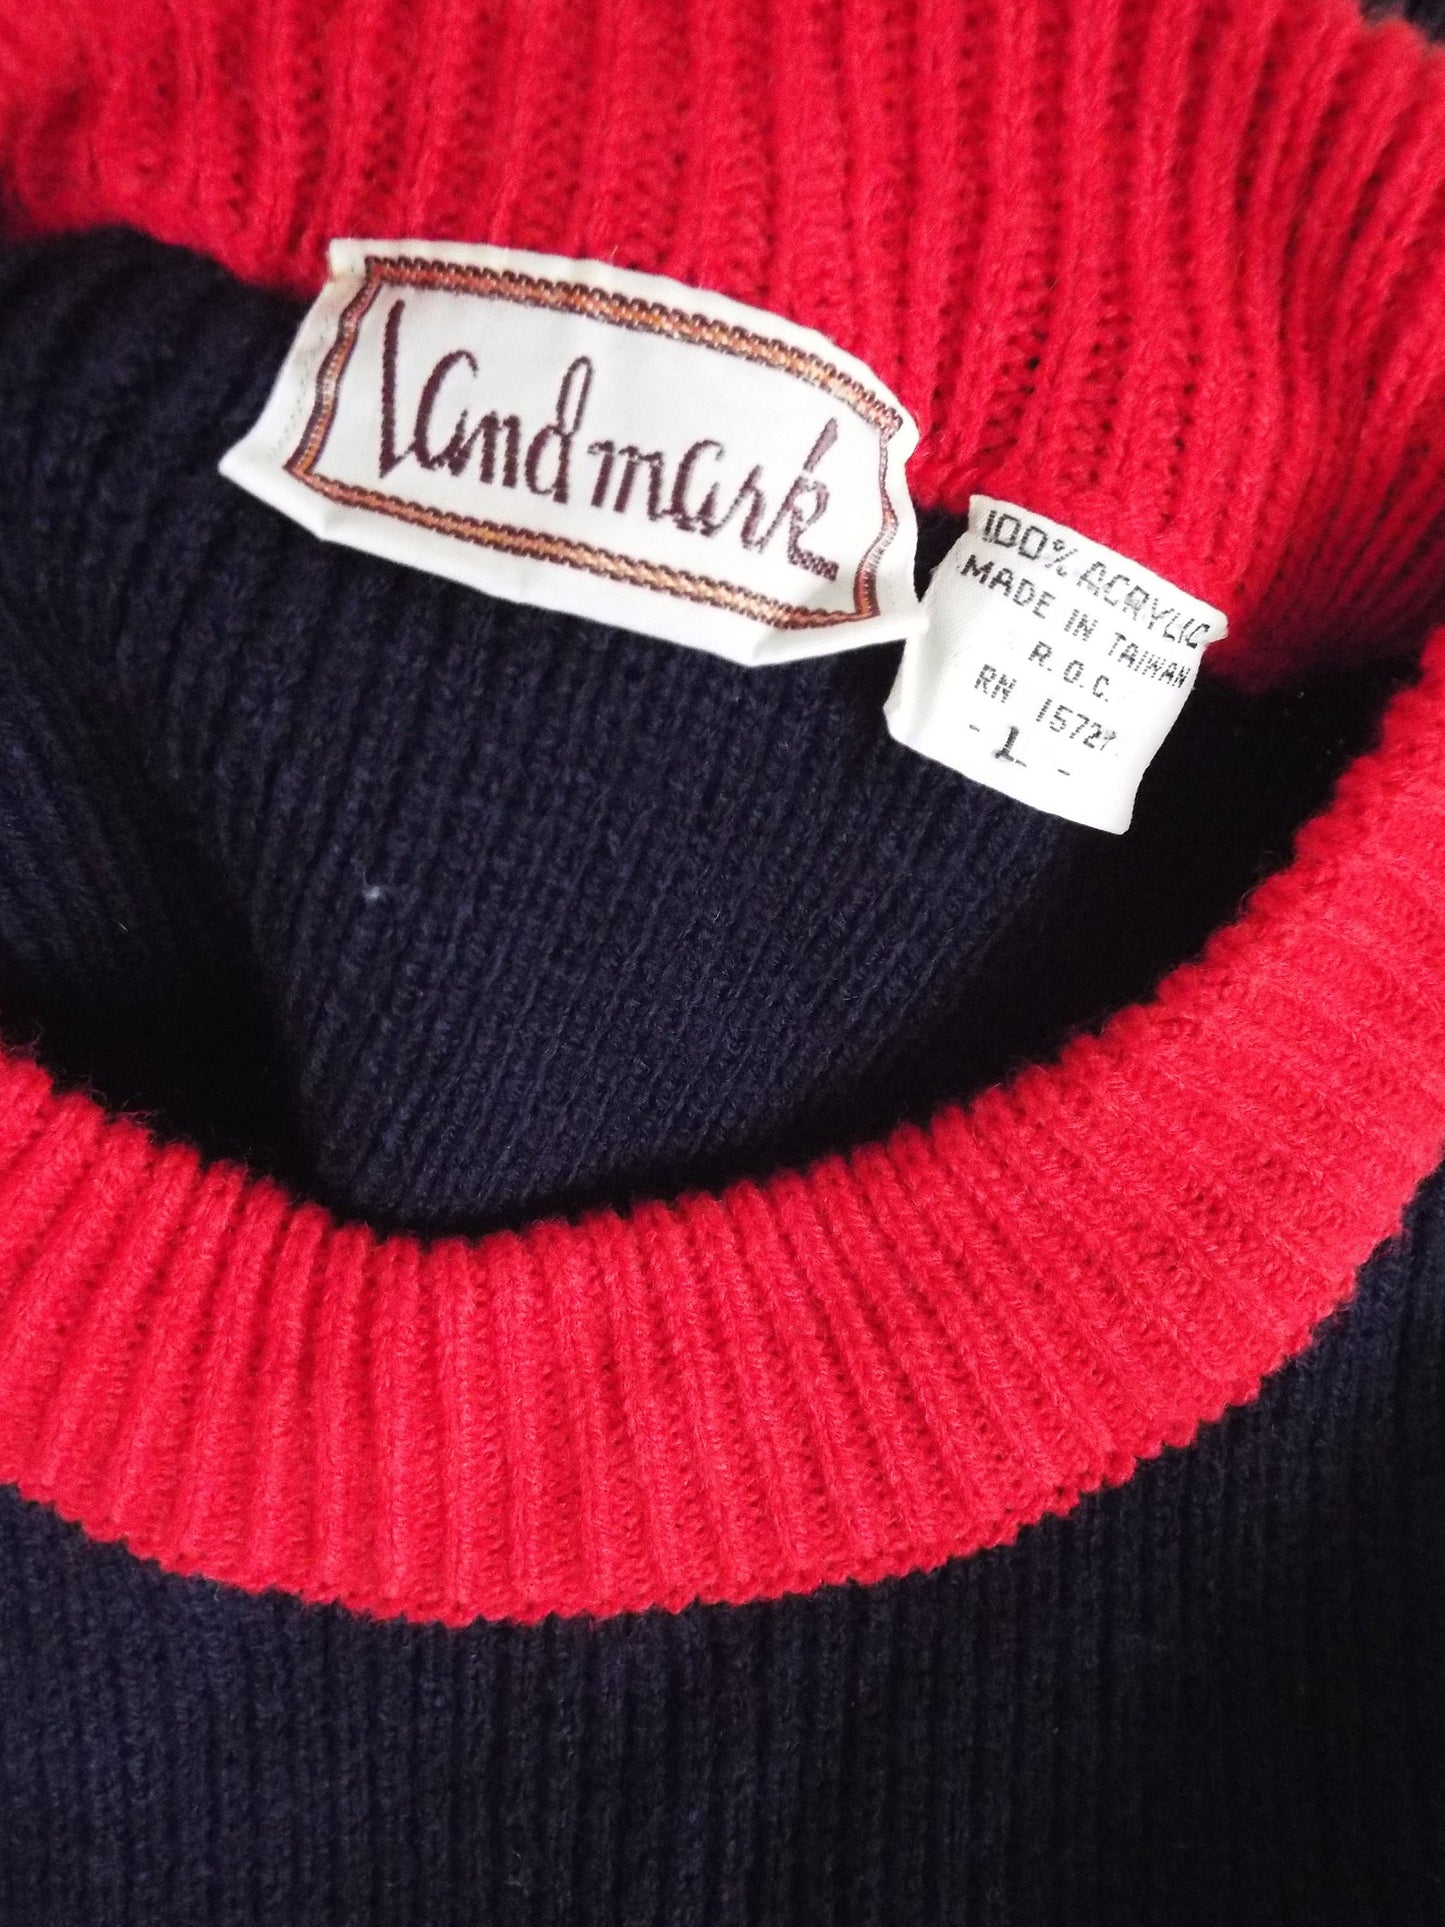 Vintage Long Sleeve Sweater by Landmark